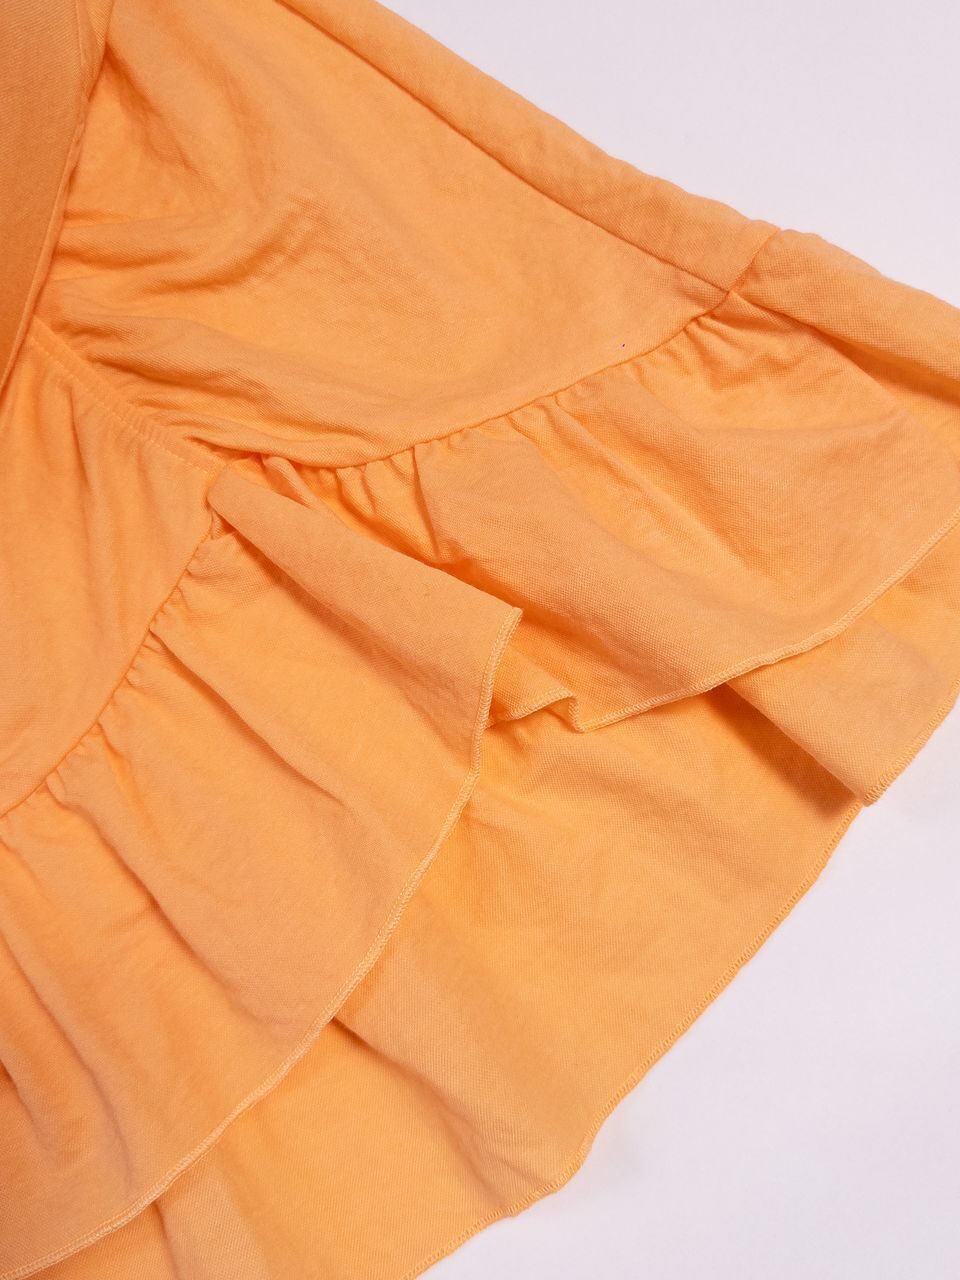 Короткая юбка классического кроя с оборкой цвет оранжевый размер EUR L (rus 48) Gina Tricot